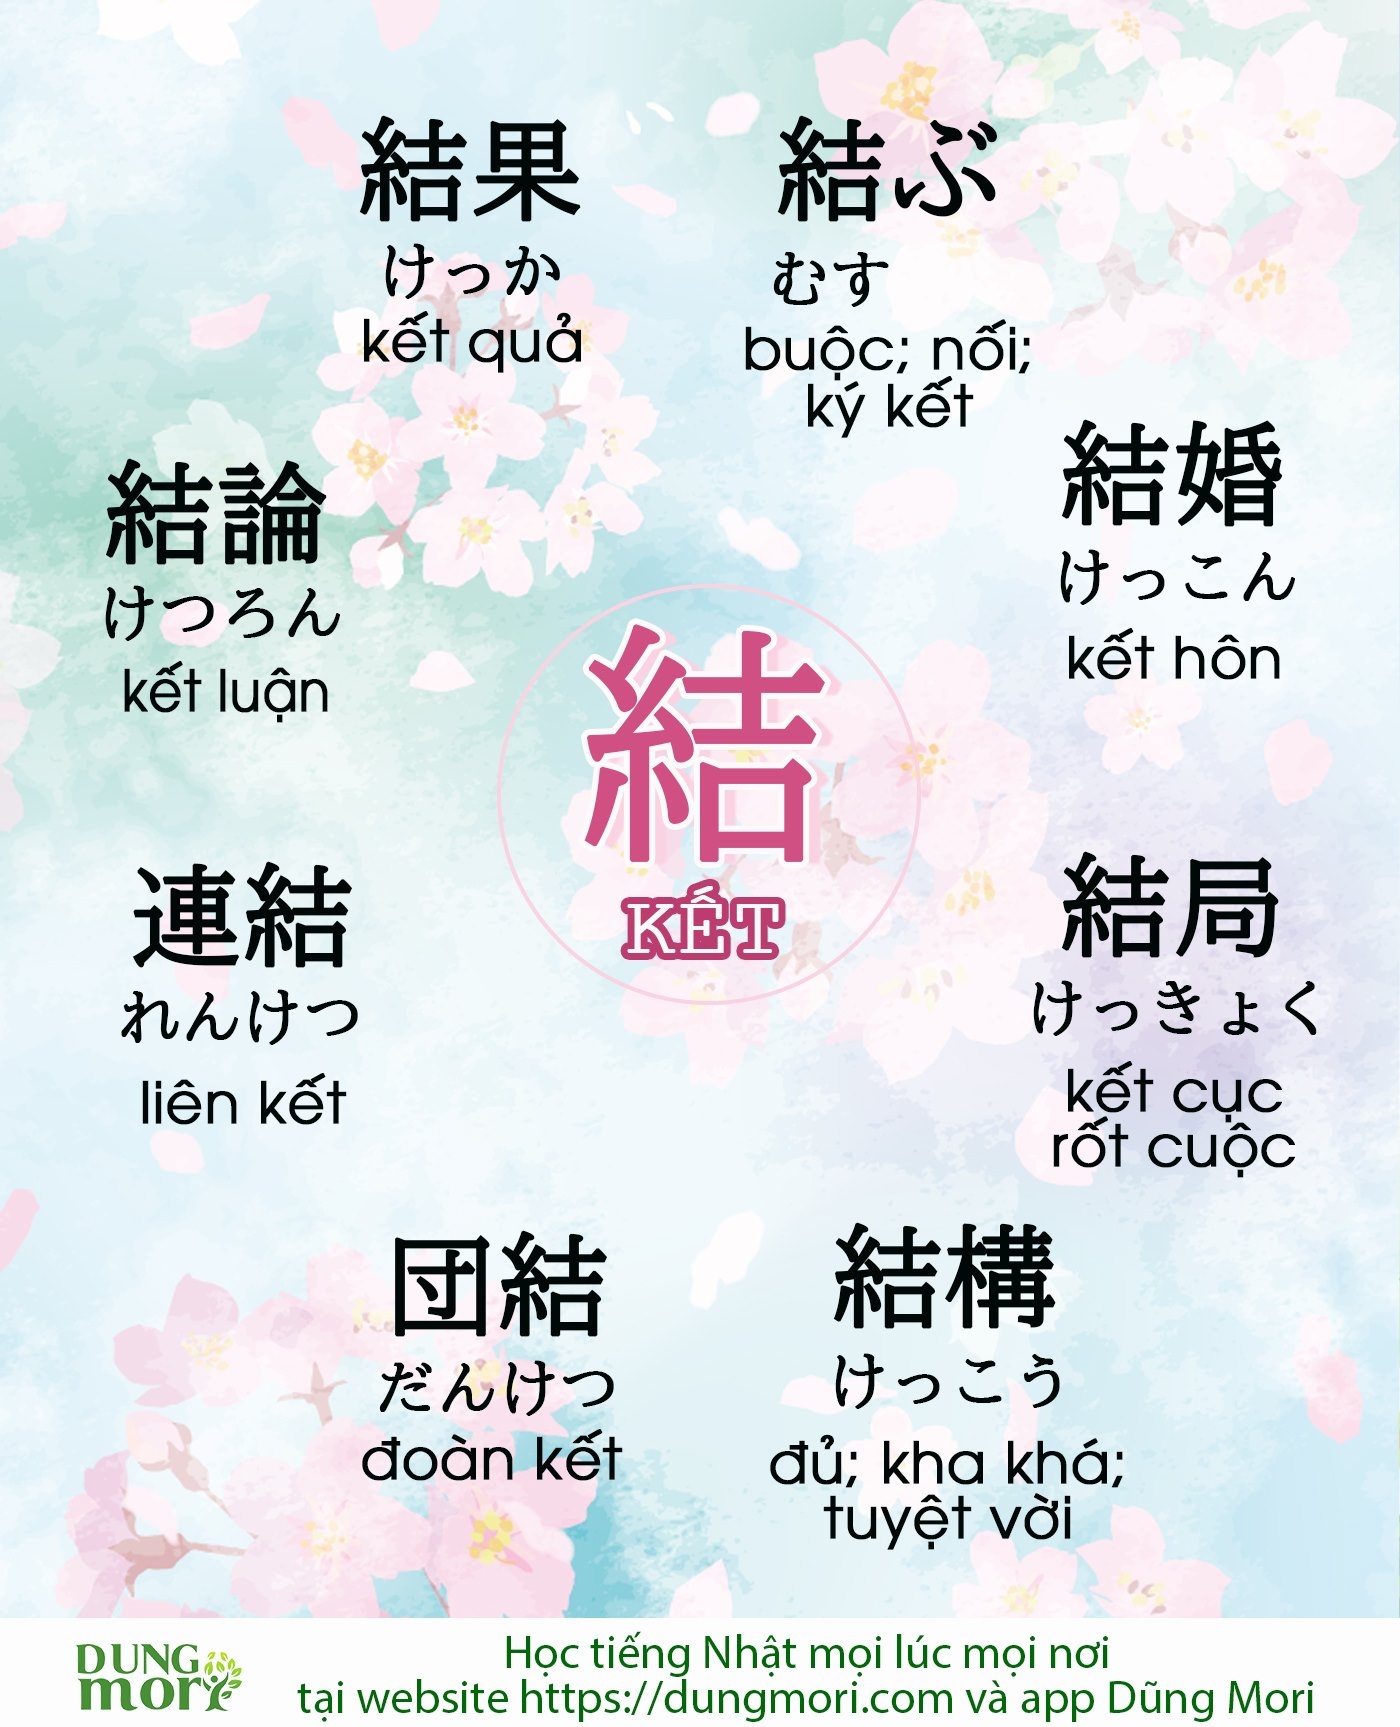 Một số từ vựng tiếng Nhật liên quan đến Chữ Kết